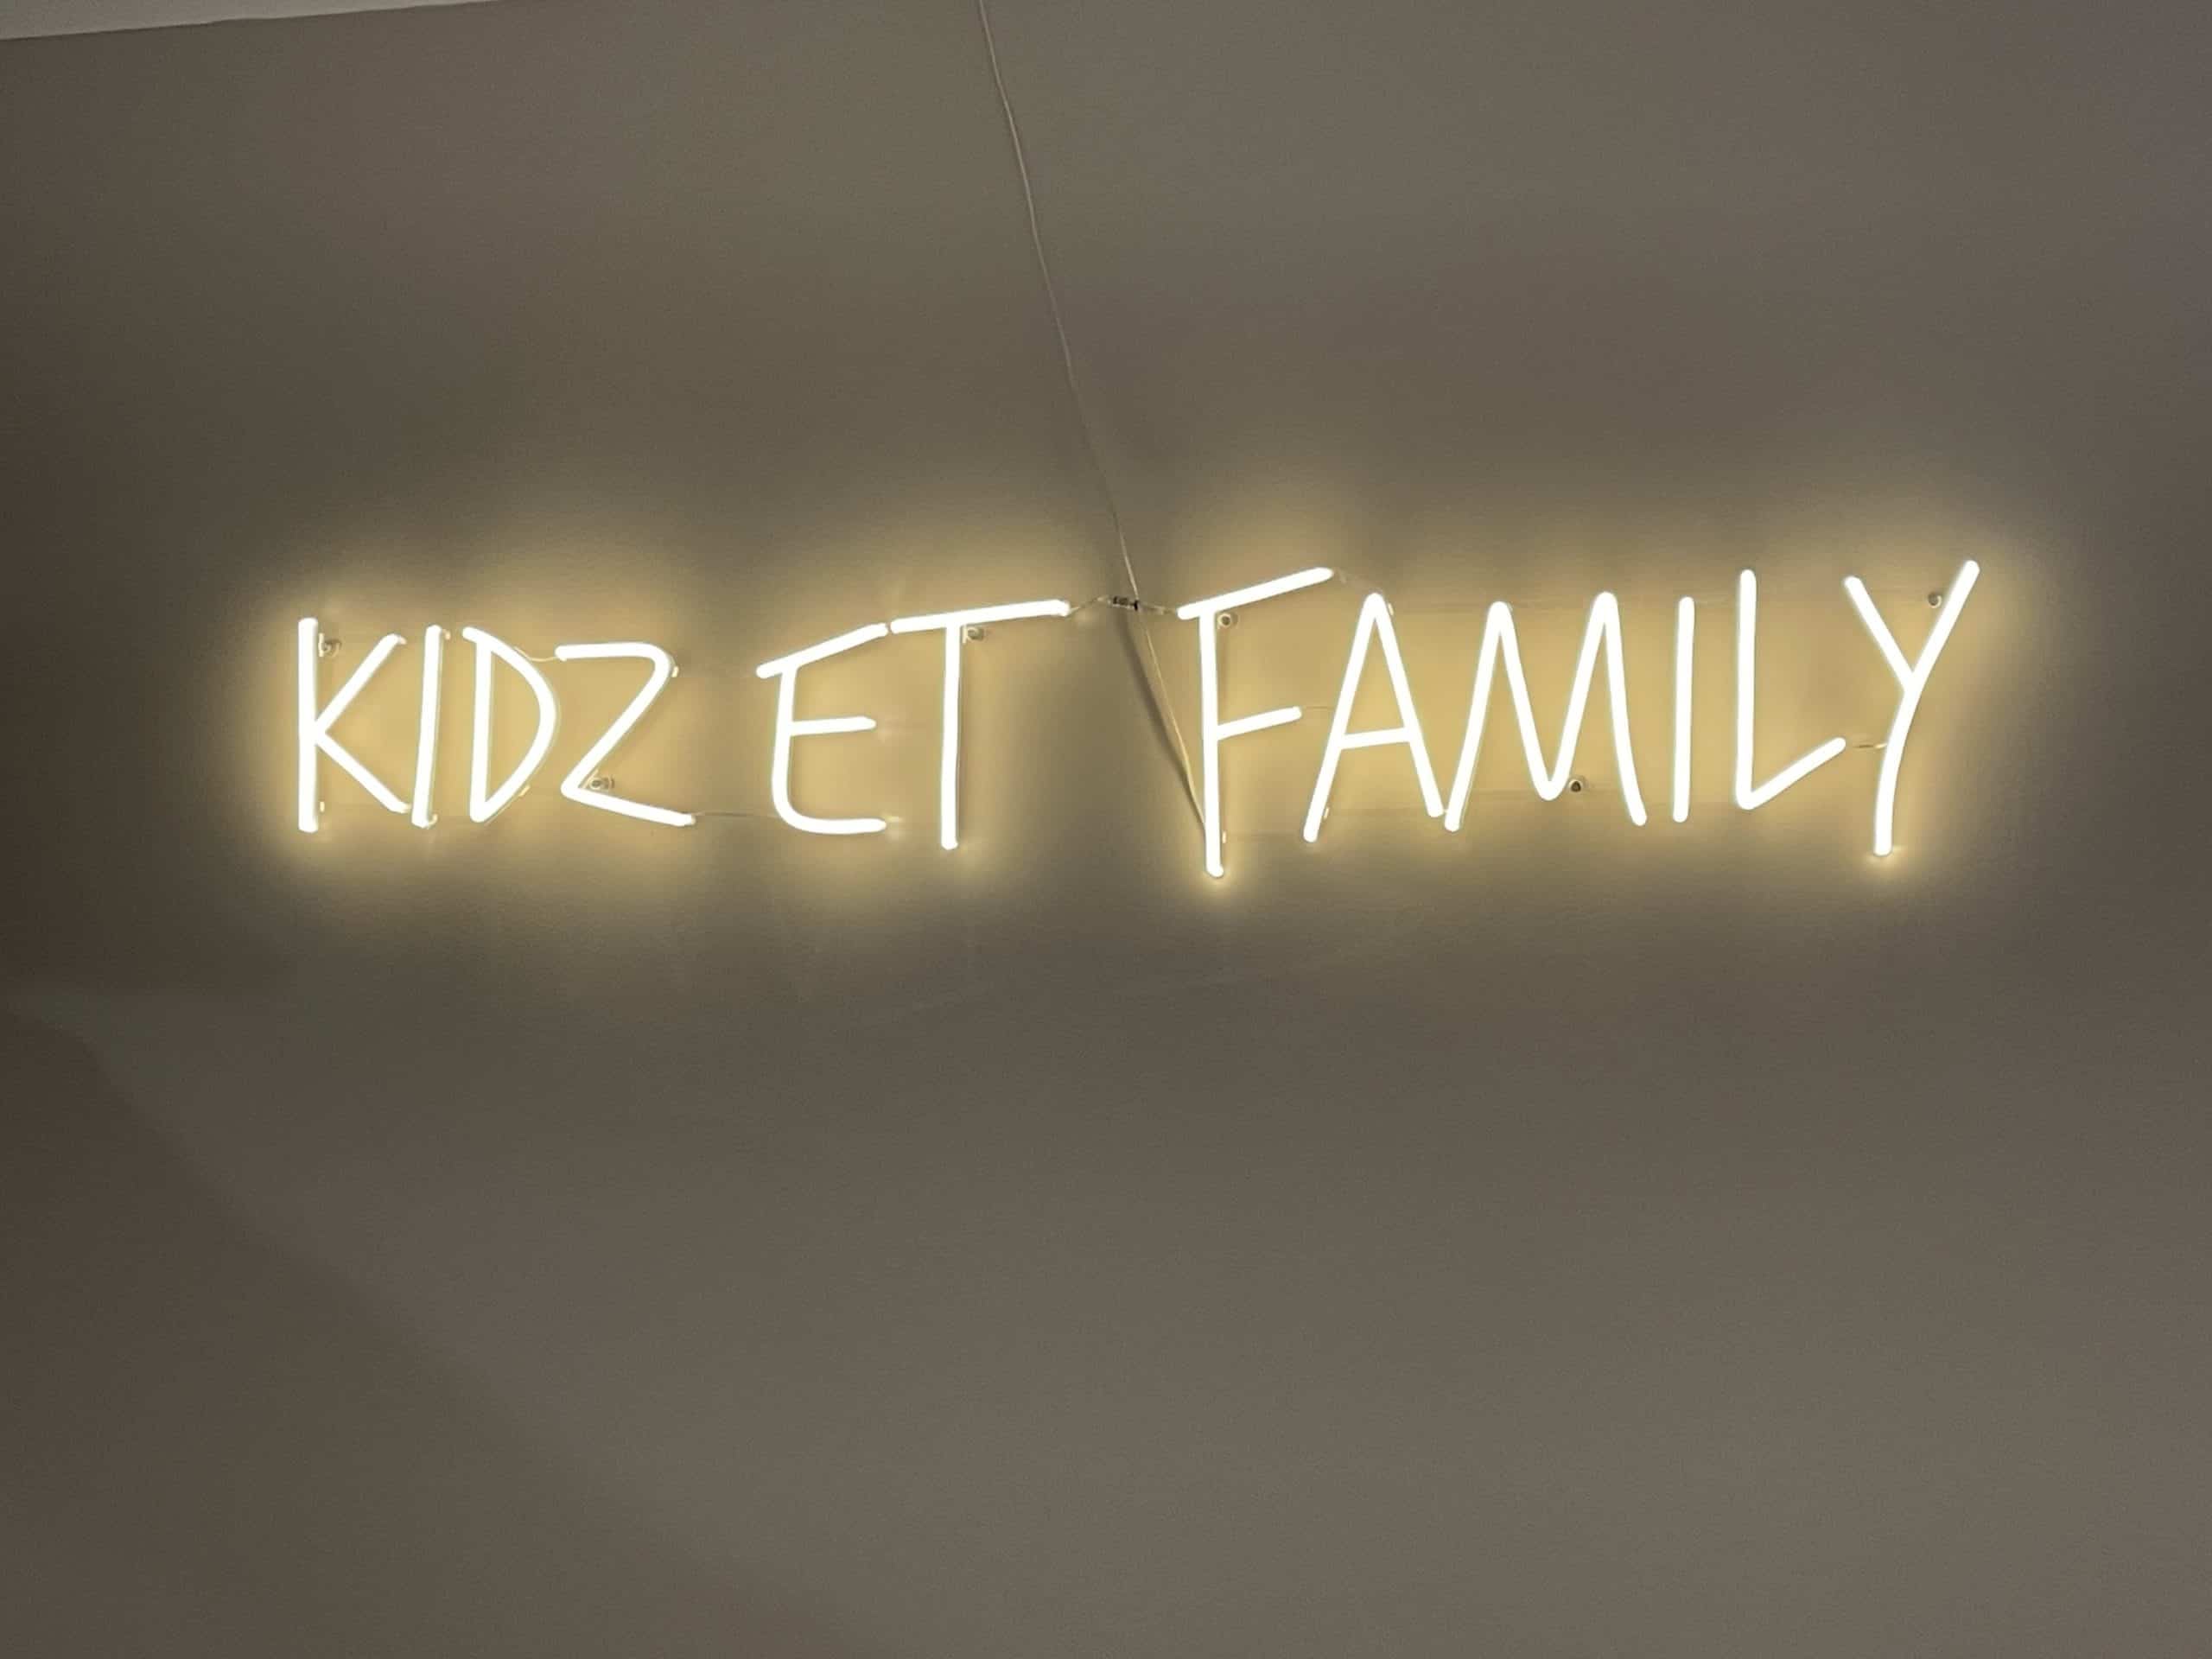 Cabinet de psychologie et de psychopédagogie pour enfants - Kidz et Family